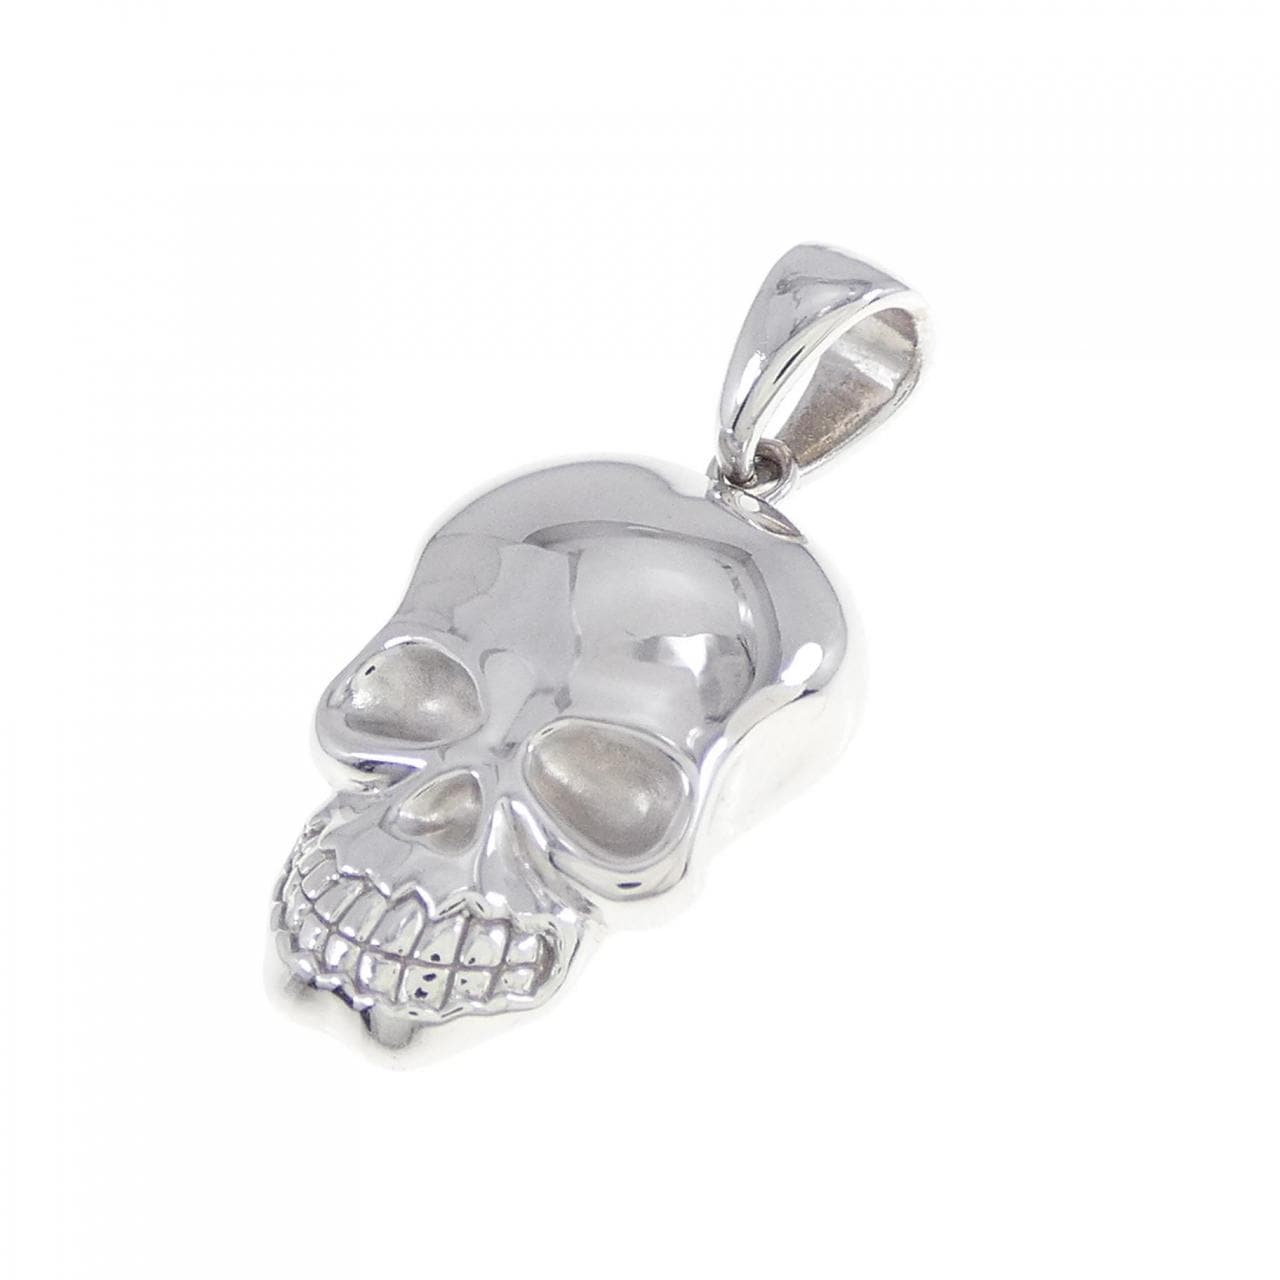 750WG skull pendant